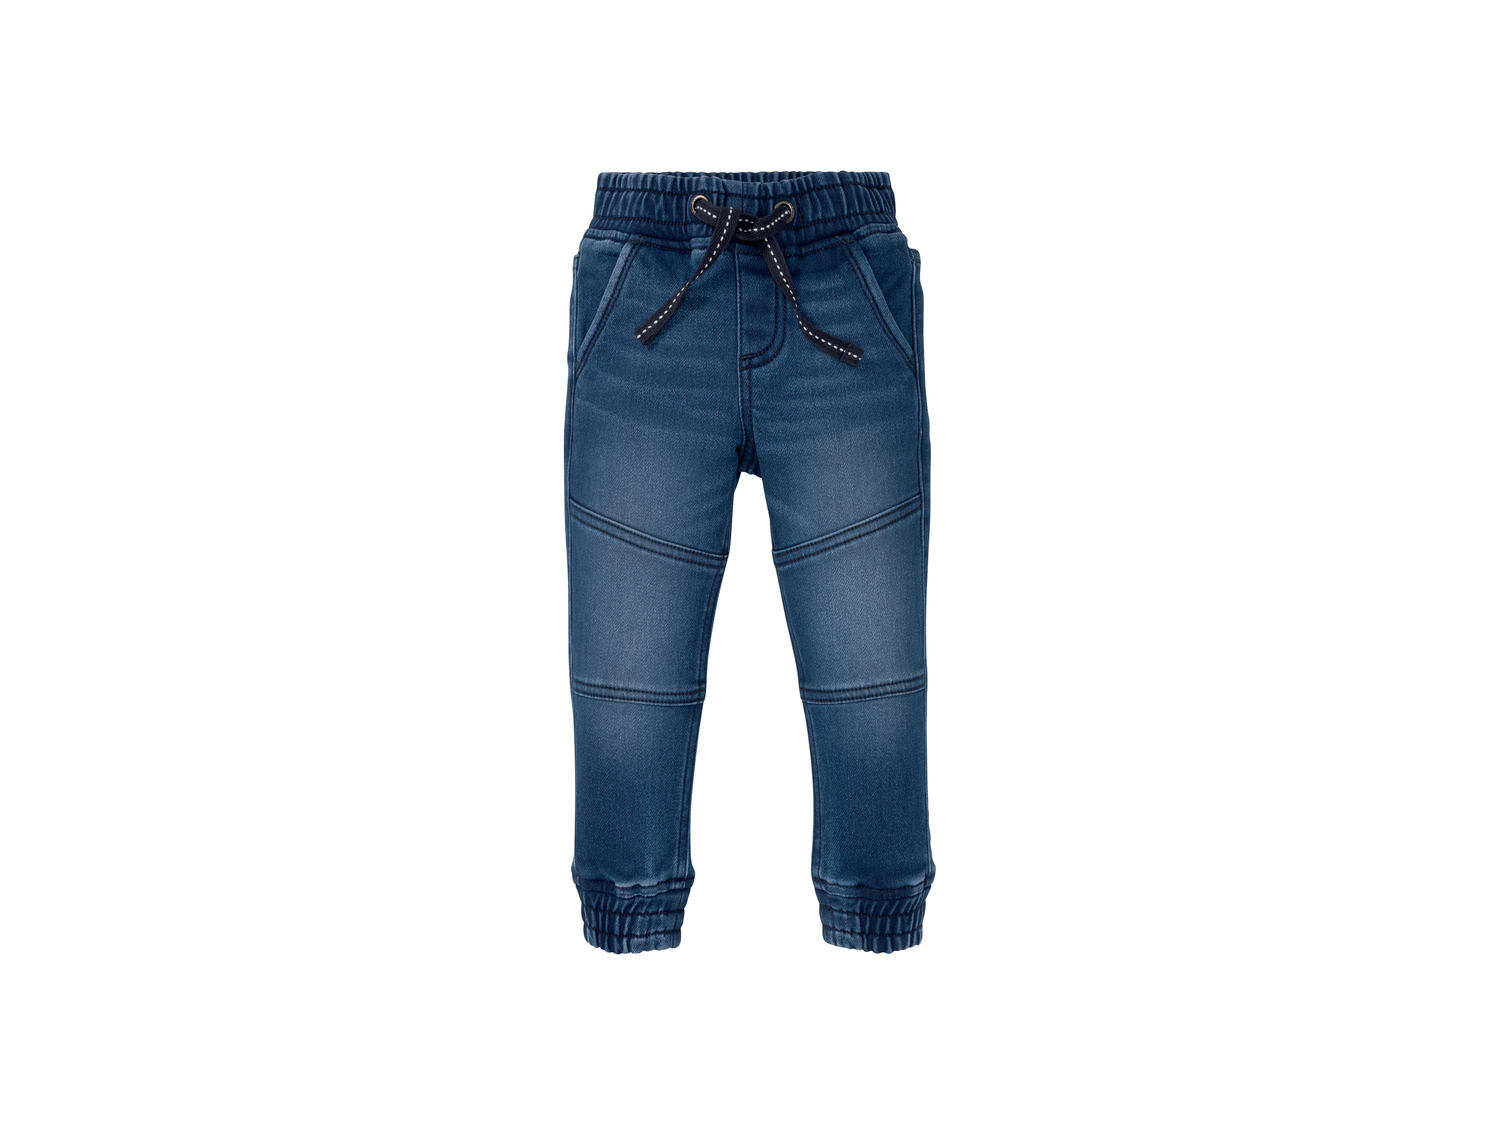 Pantaloni da bambino Lupilu, prezzo 7.99 &#8364; 
Misure: 1-6 anni 
- 
Con interno ...